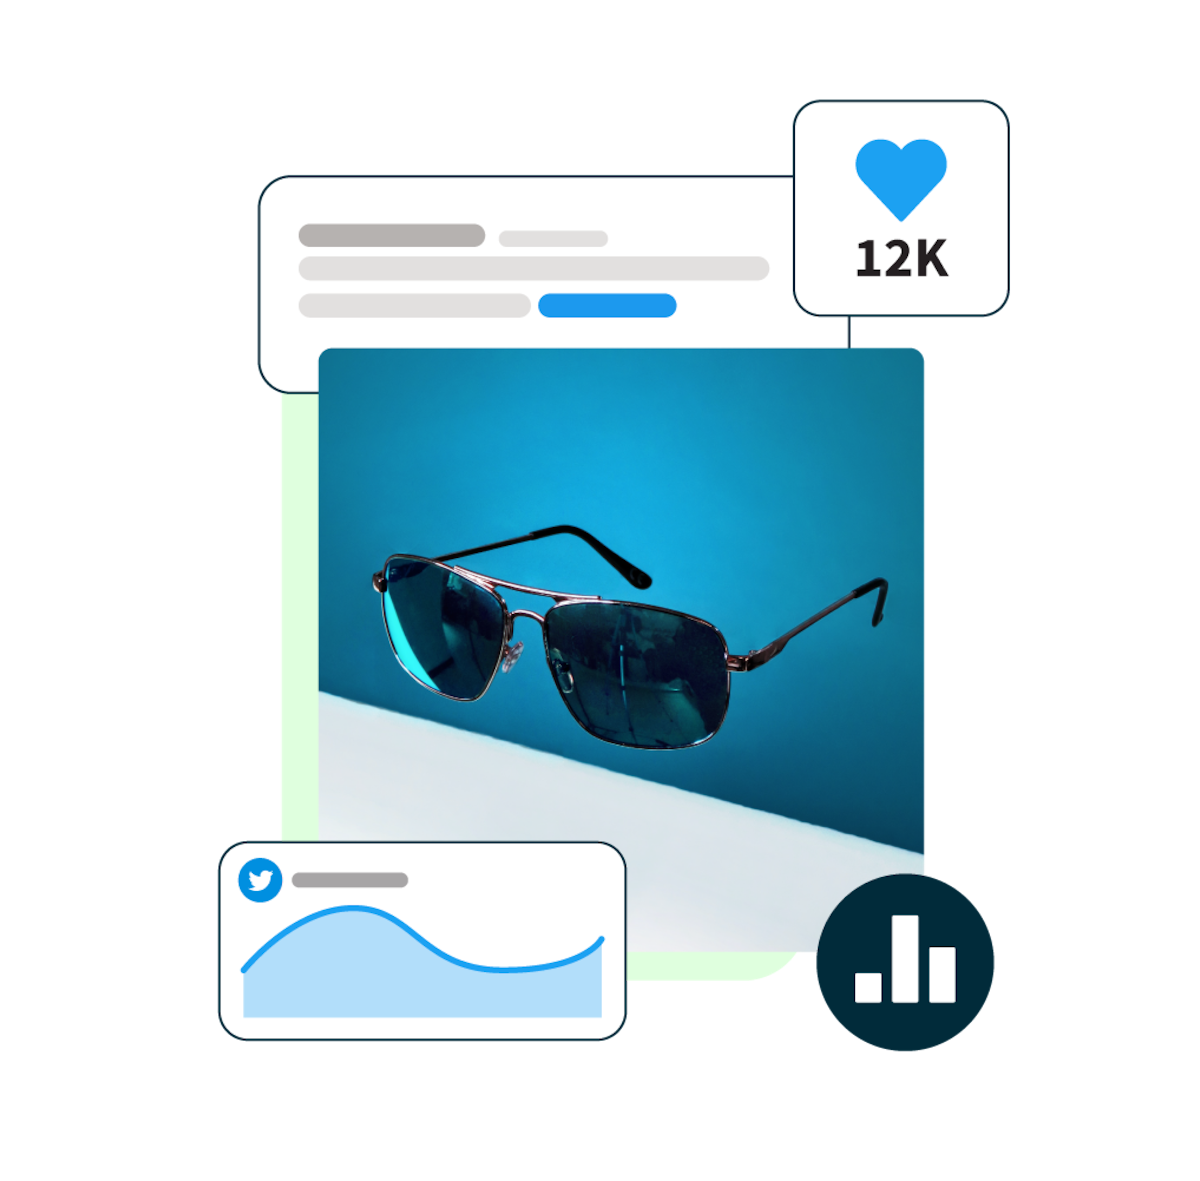 Bild einer Sonnenbrille vor blauem Hintergrund und Pop-ups mit Social Media-Statistiken darum herum